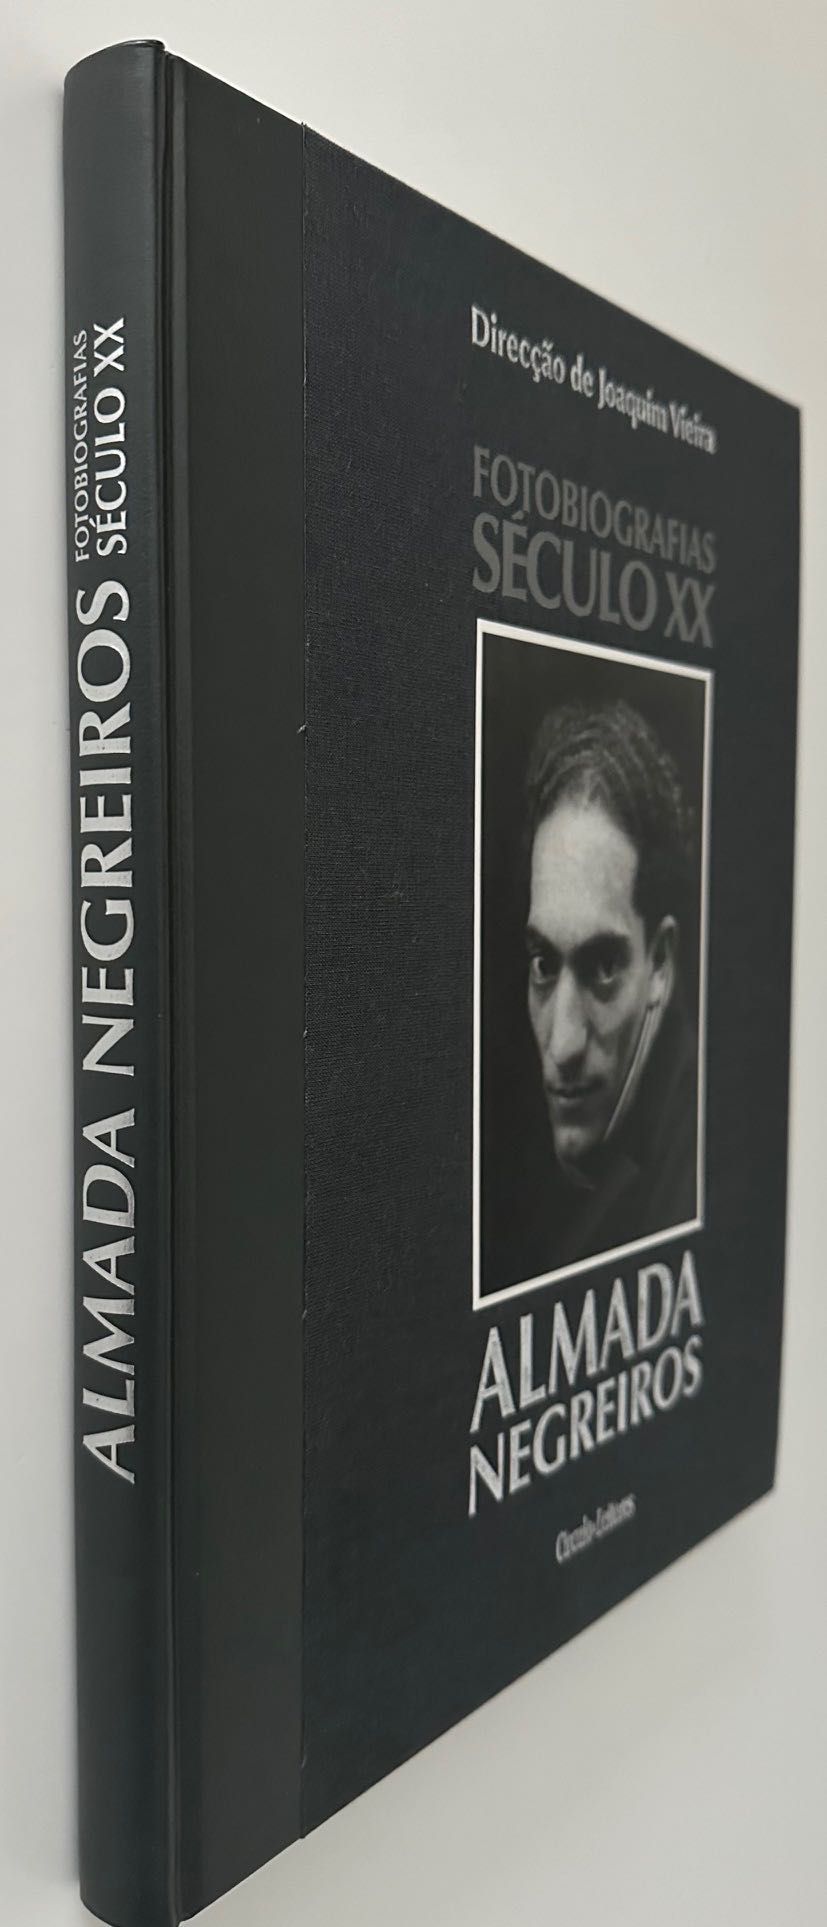 Almada Negreiros - Fotobiografias Século XX - 2001